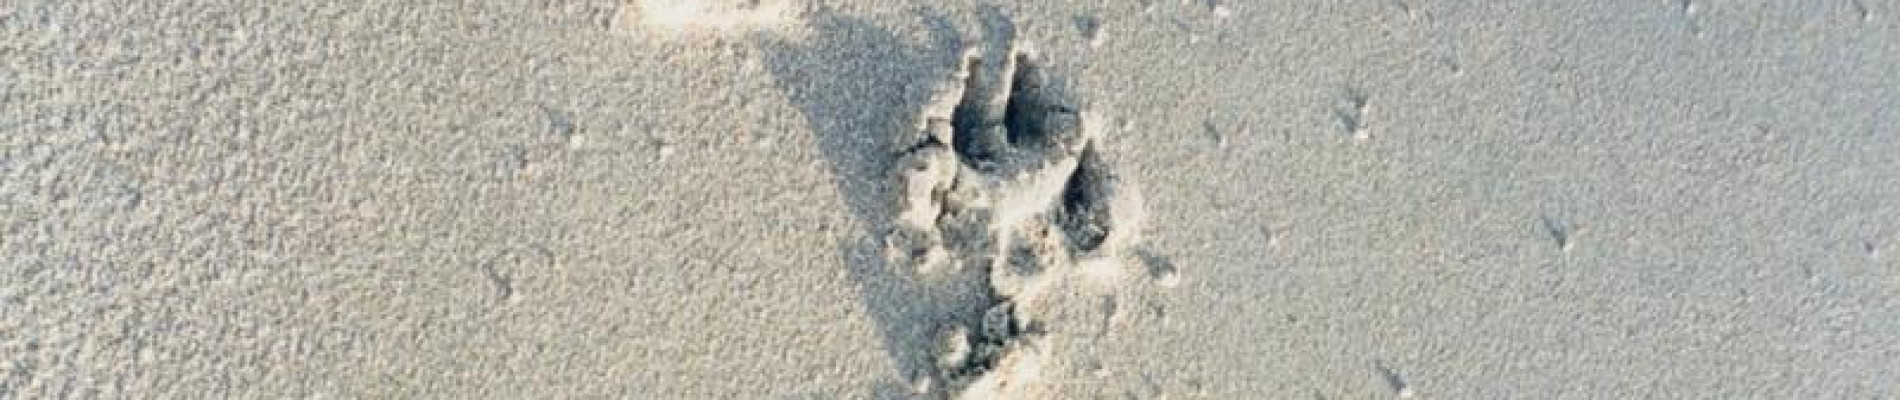 Afdrukken van hondenpootjes in het zand